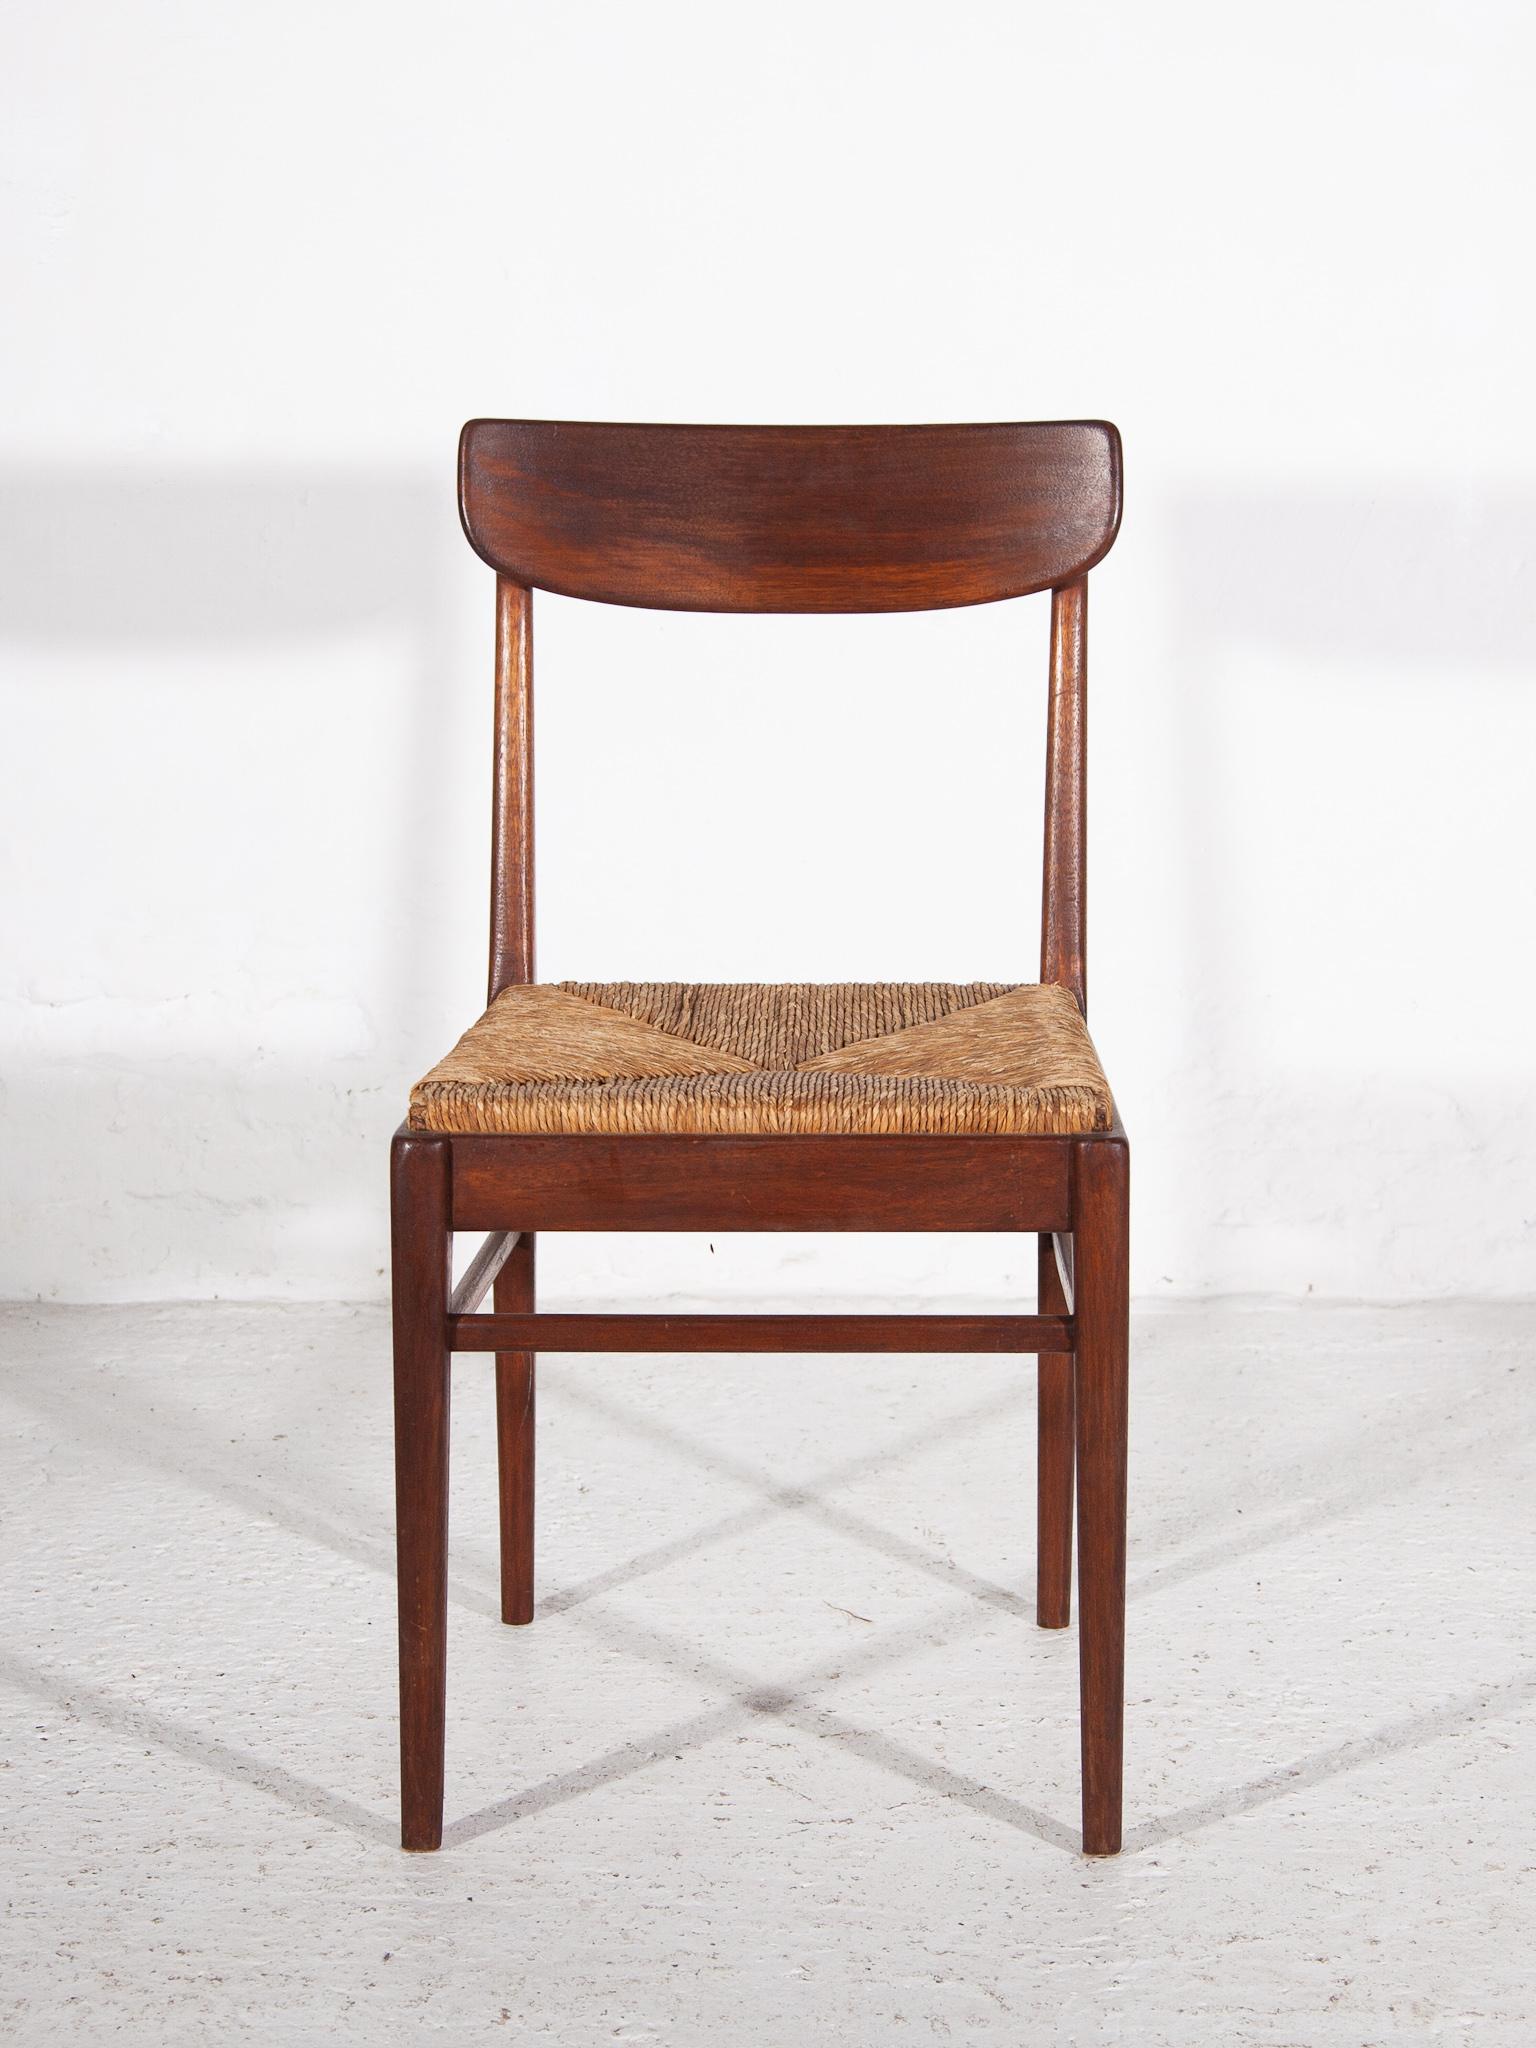 Original massivem Teakholz und Rattan Esszimmer von Stühlen, bequem zu sitzen, Preis pro Stück 5 Stühle zur Verfügung handgefertigt von dem Künstler Paulussen, Belgien.